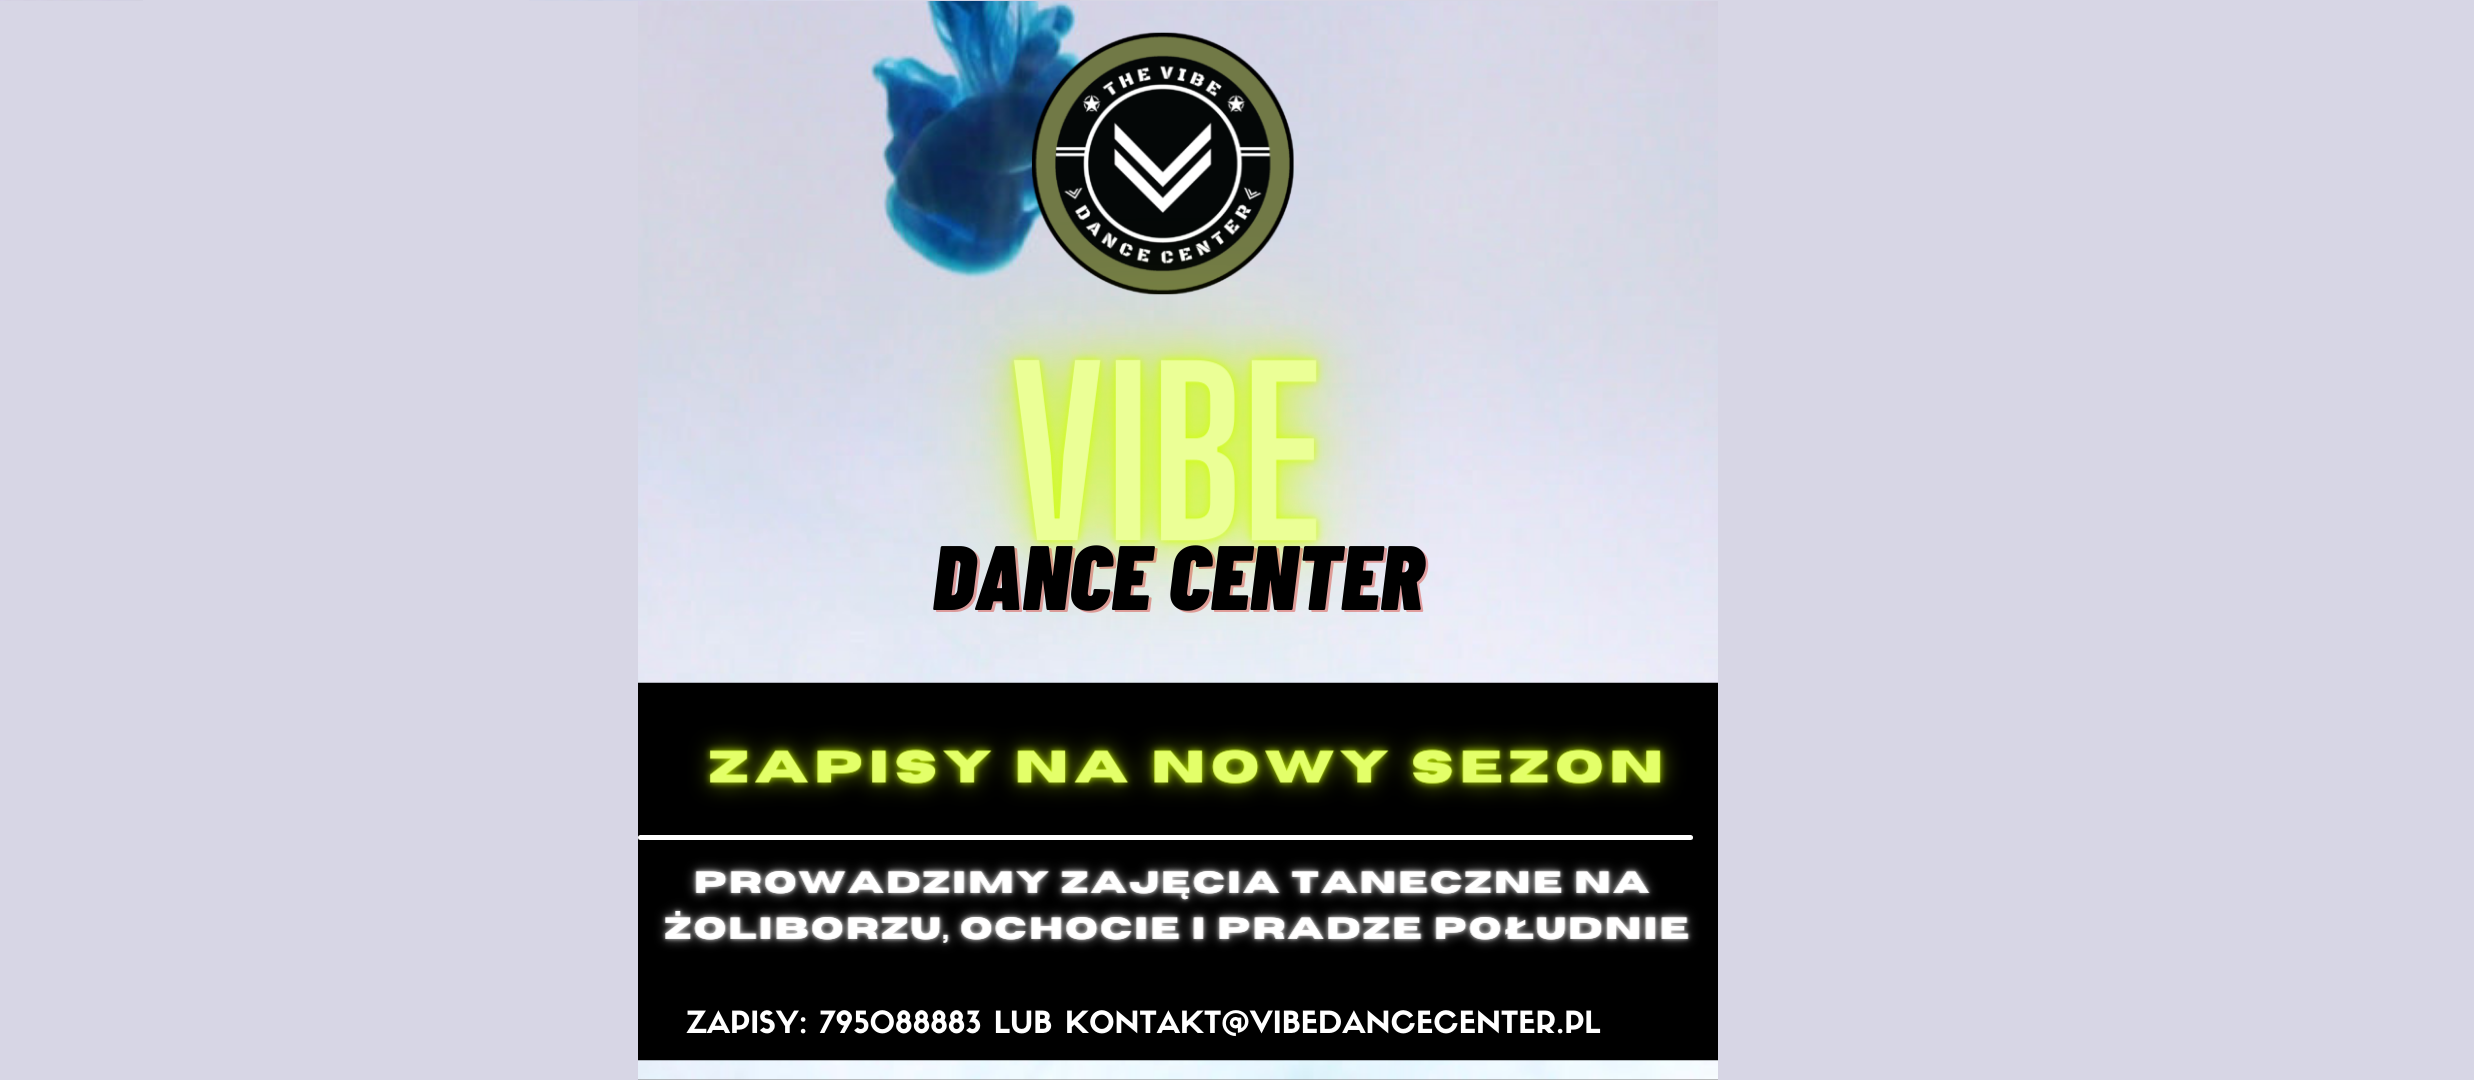 Vibe Dance Center